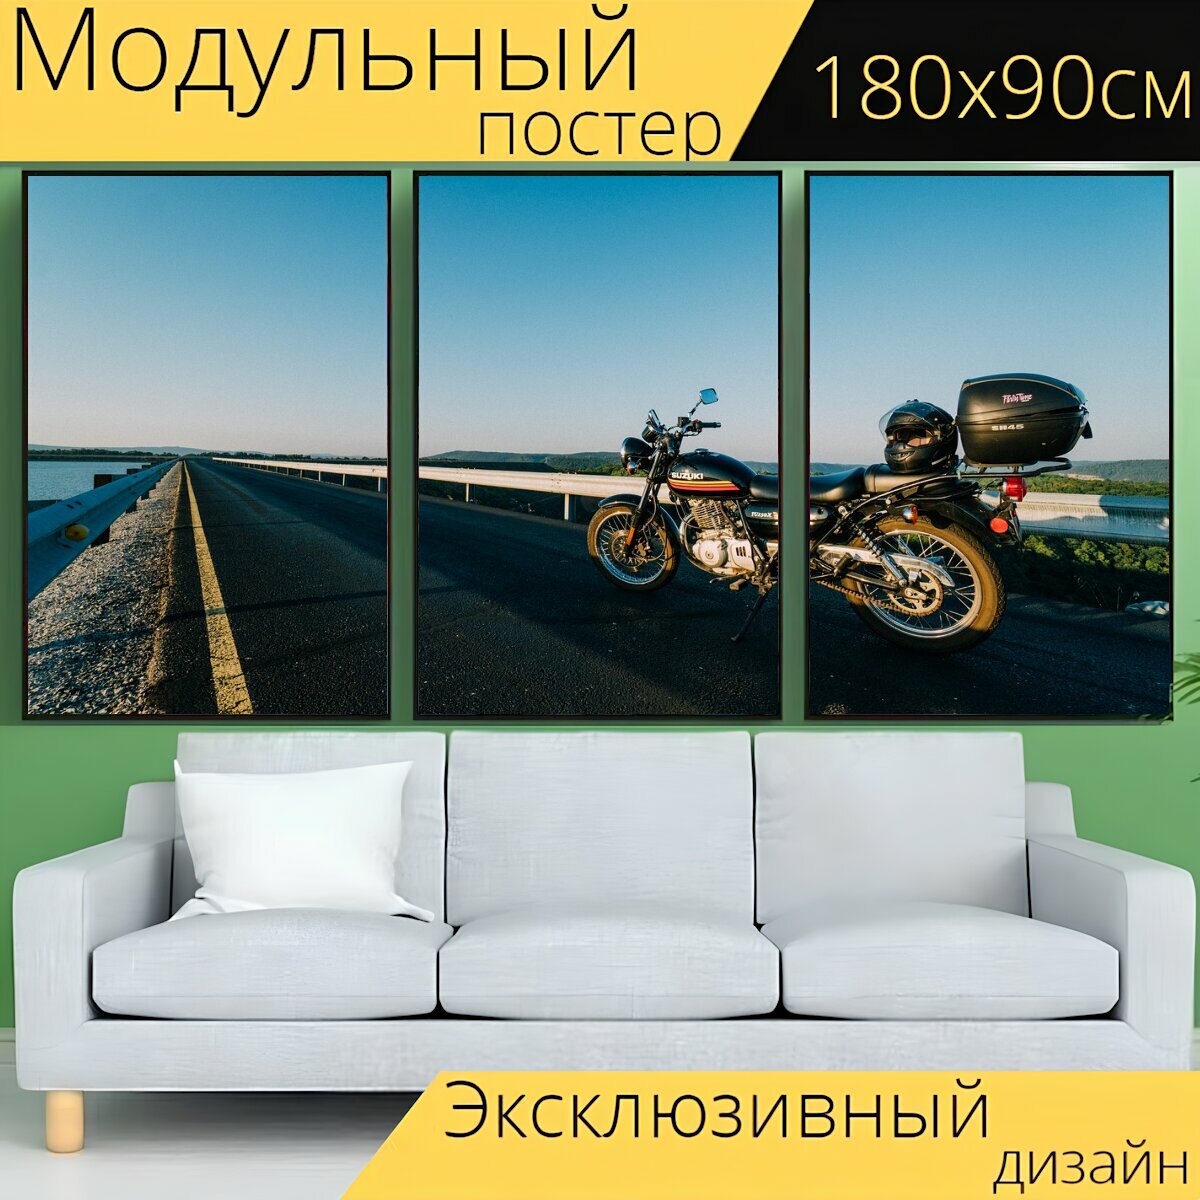 Модульный постер "Мотоцикл, дорога, шлем" 180 x 90 см. для интерьера